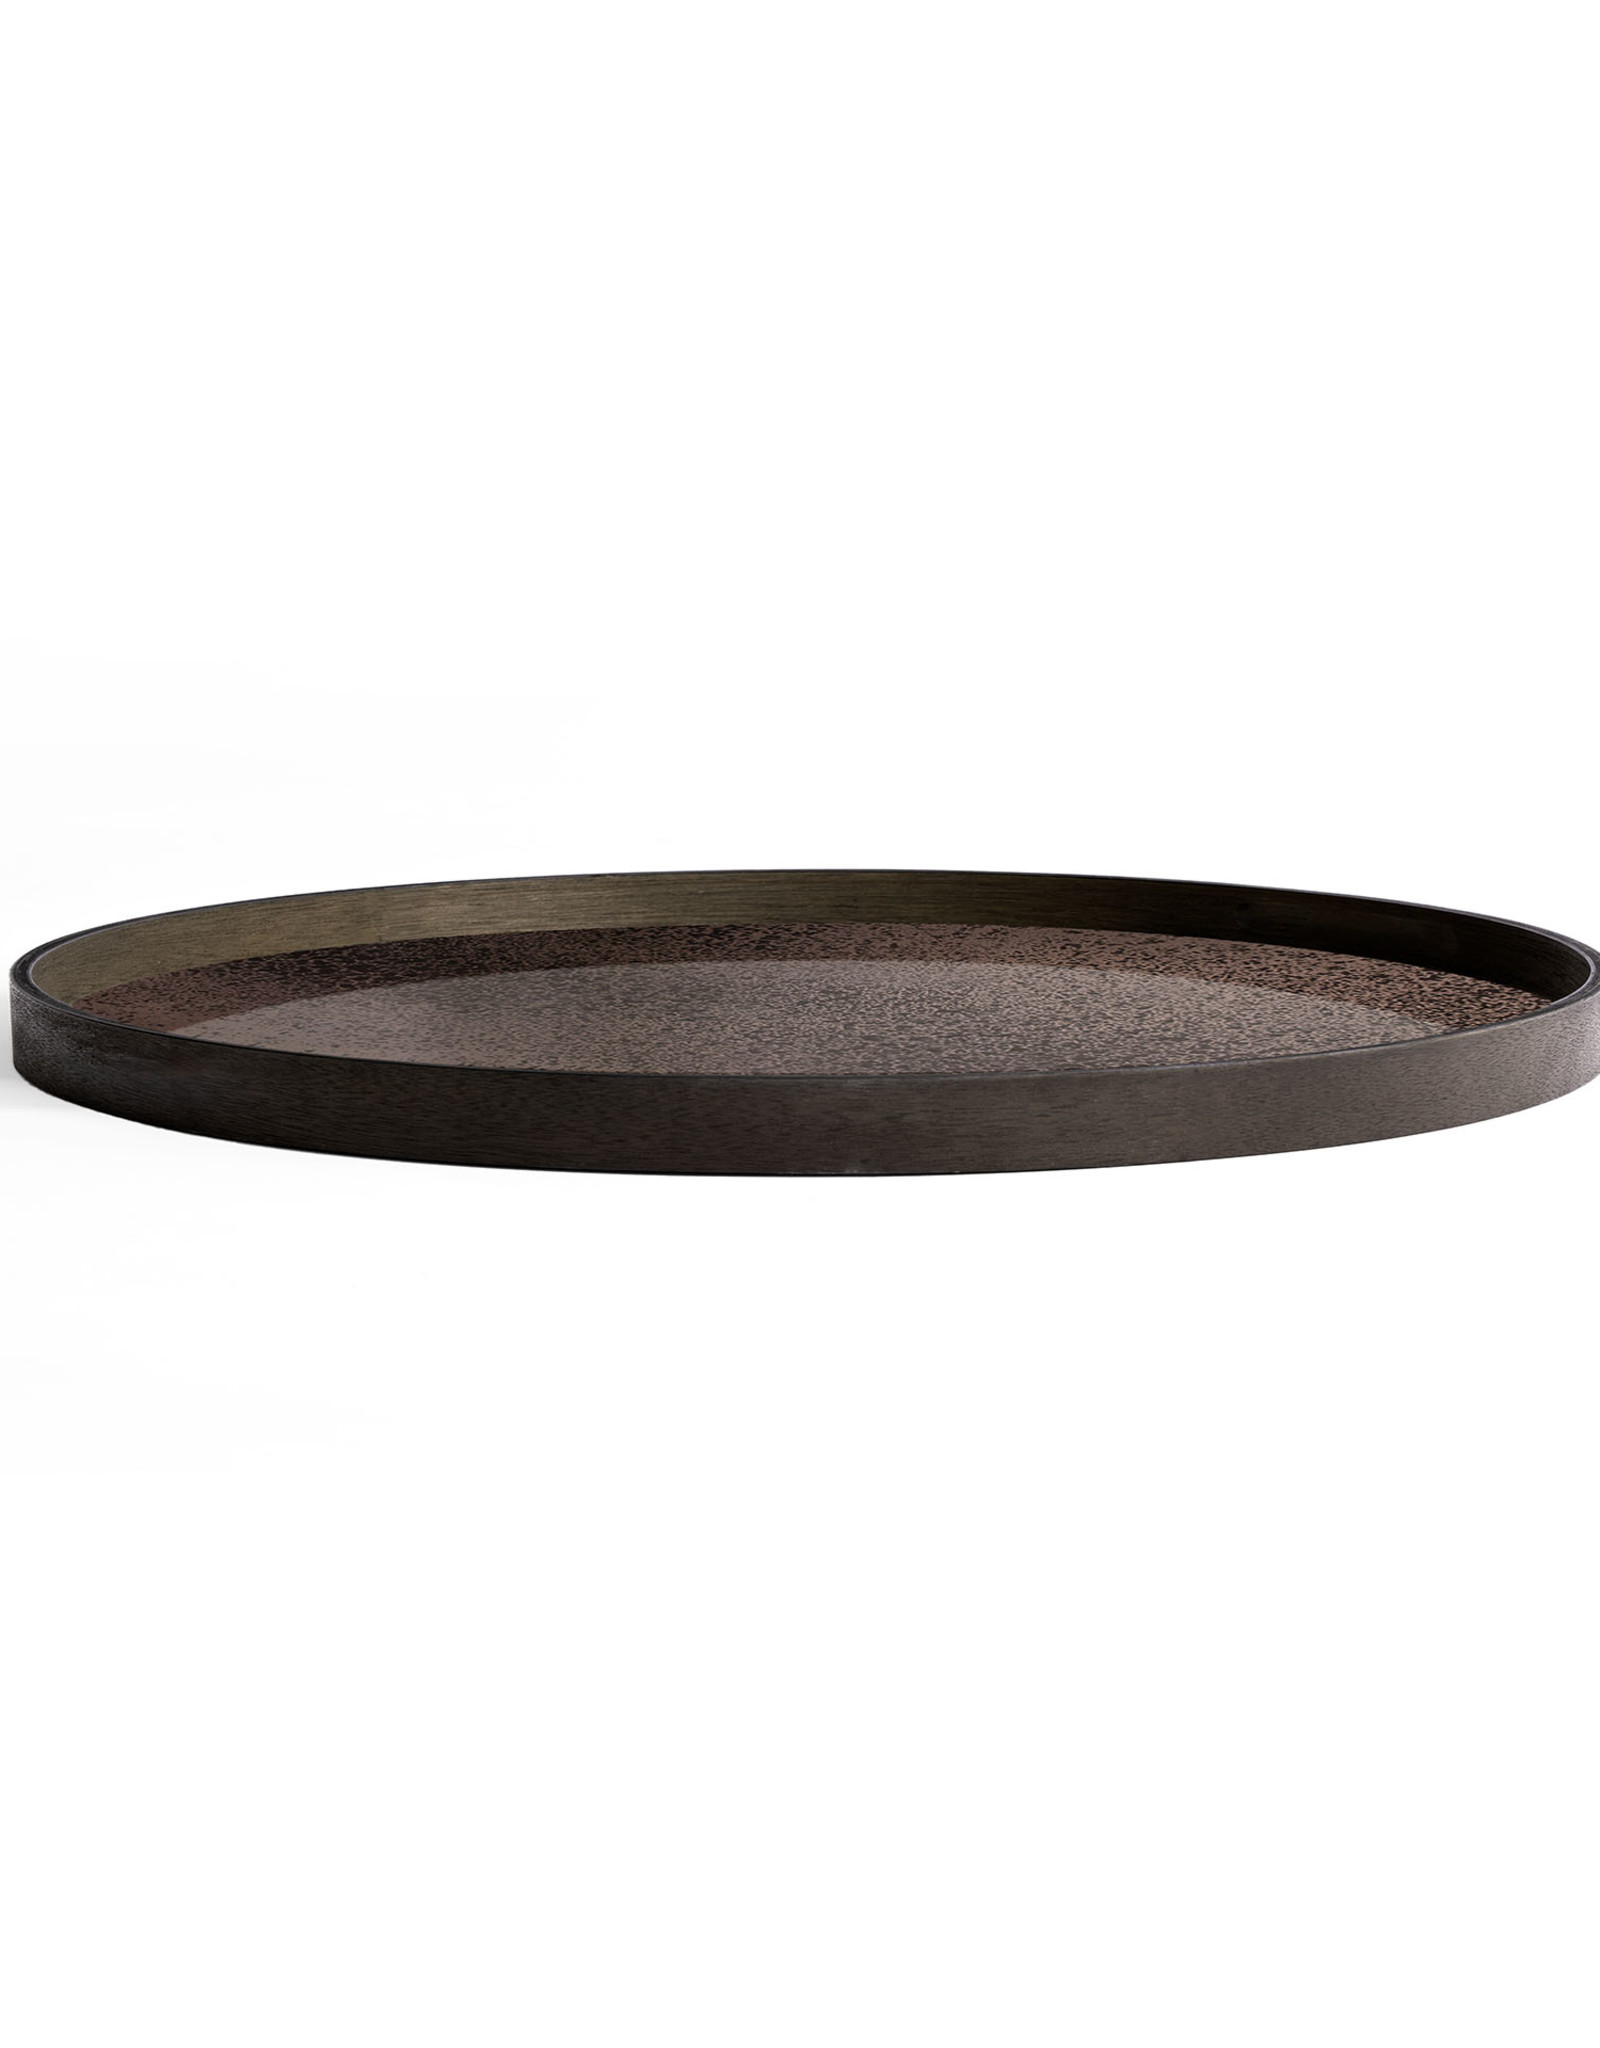 Bronze mirror tray - round - XL